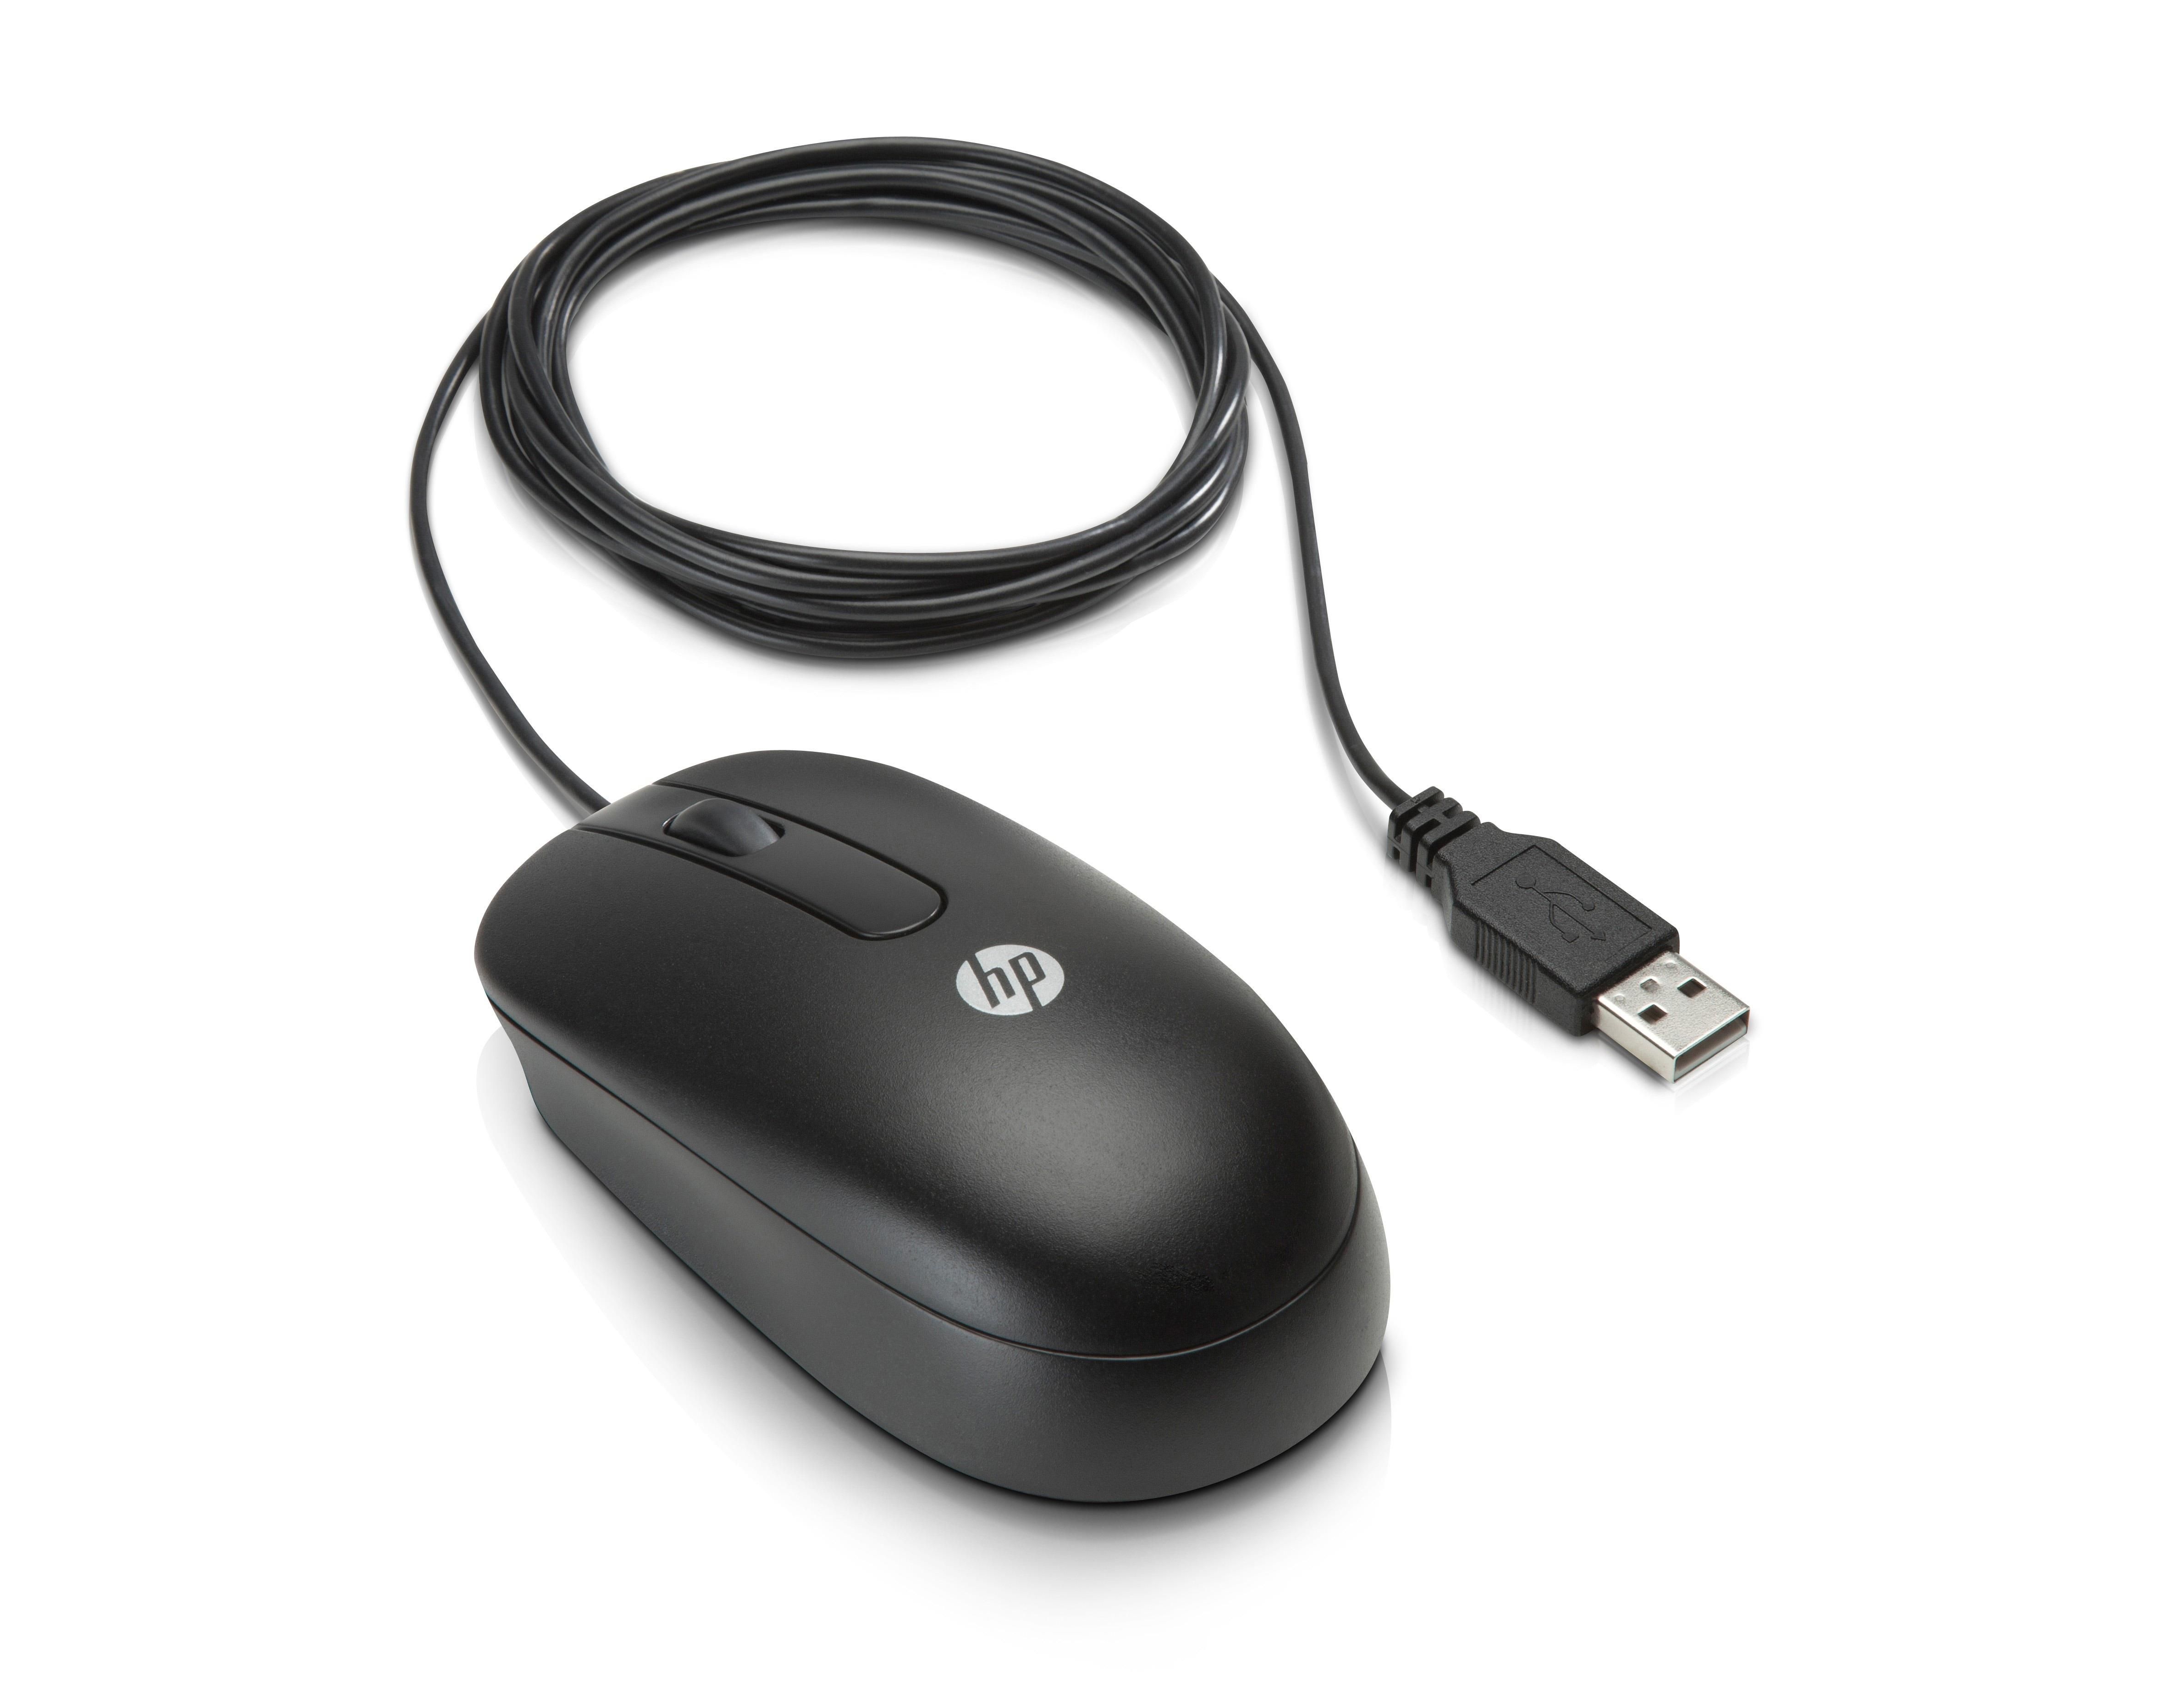 HP 3-button USB Laser